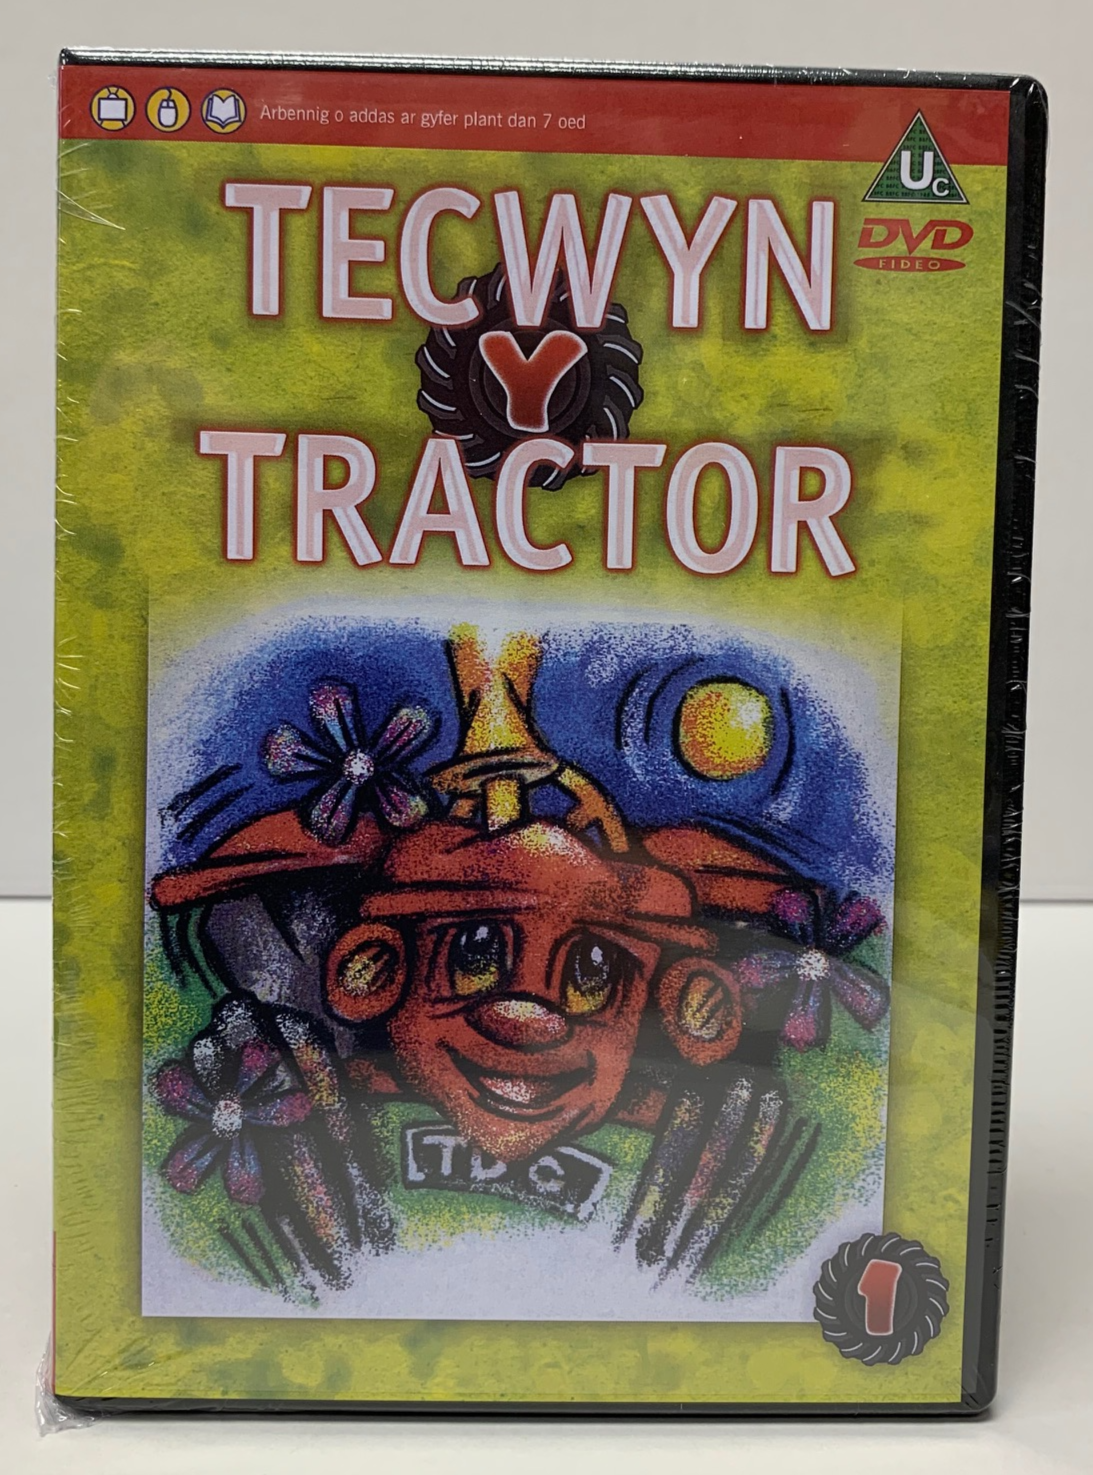 Tecwyn y Tractor